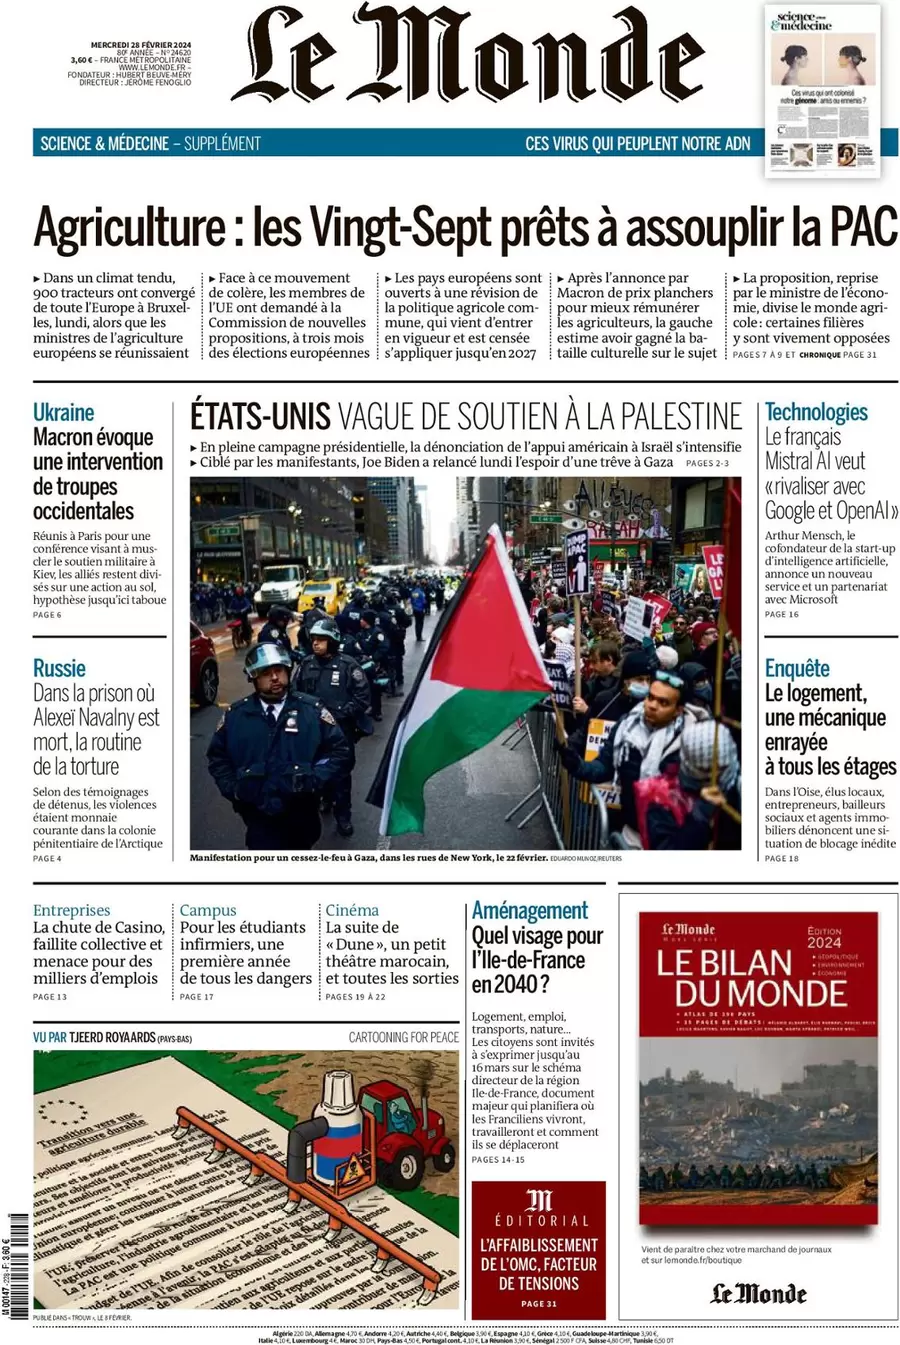 prima pagina - Le Monde del 27/02/2024